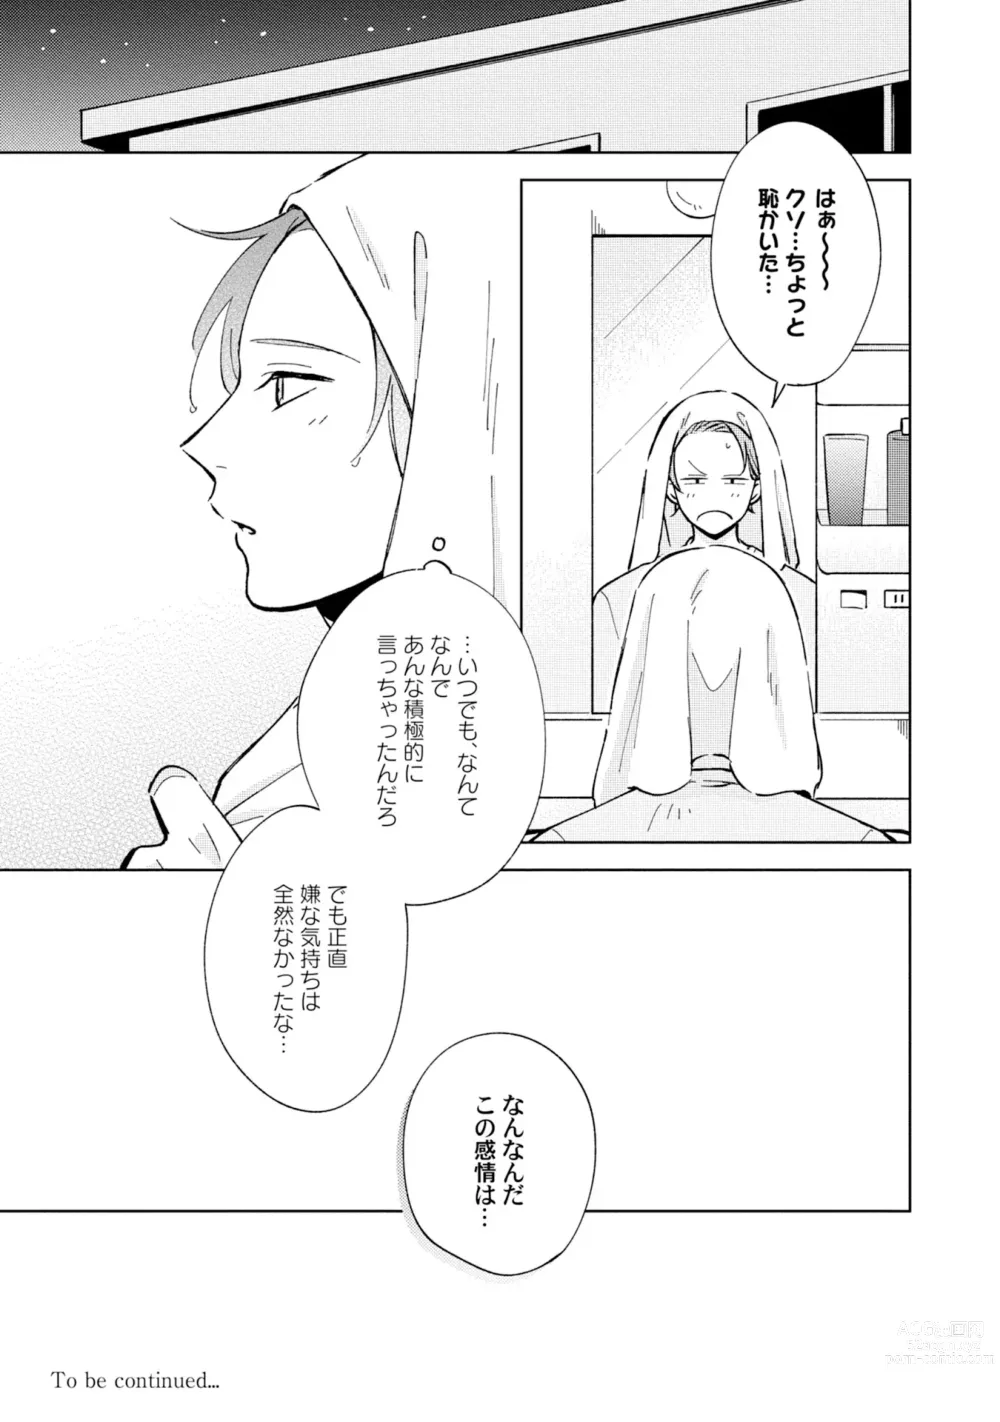 Page 27 of manga Toho 3-byou no Trouble Love Room 3